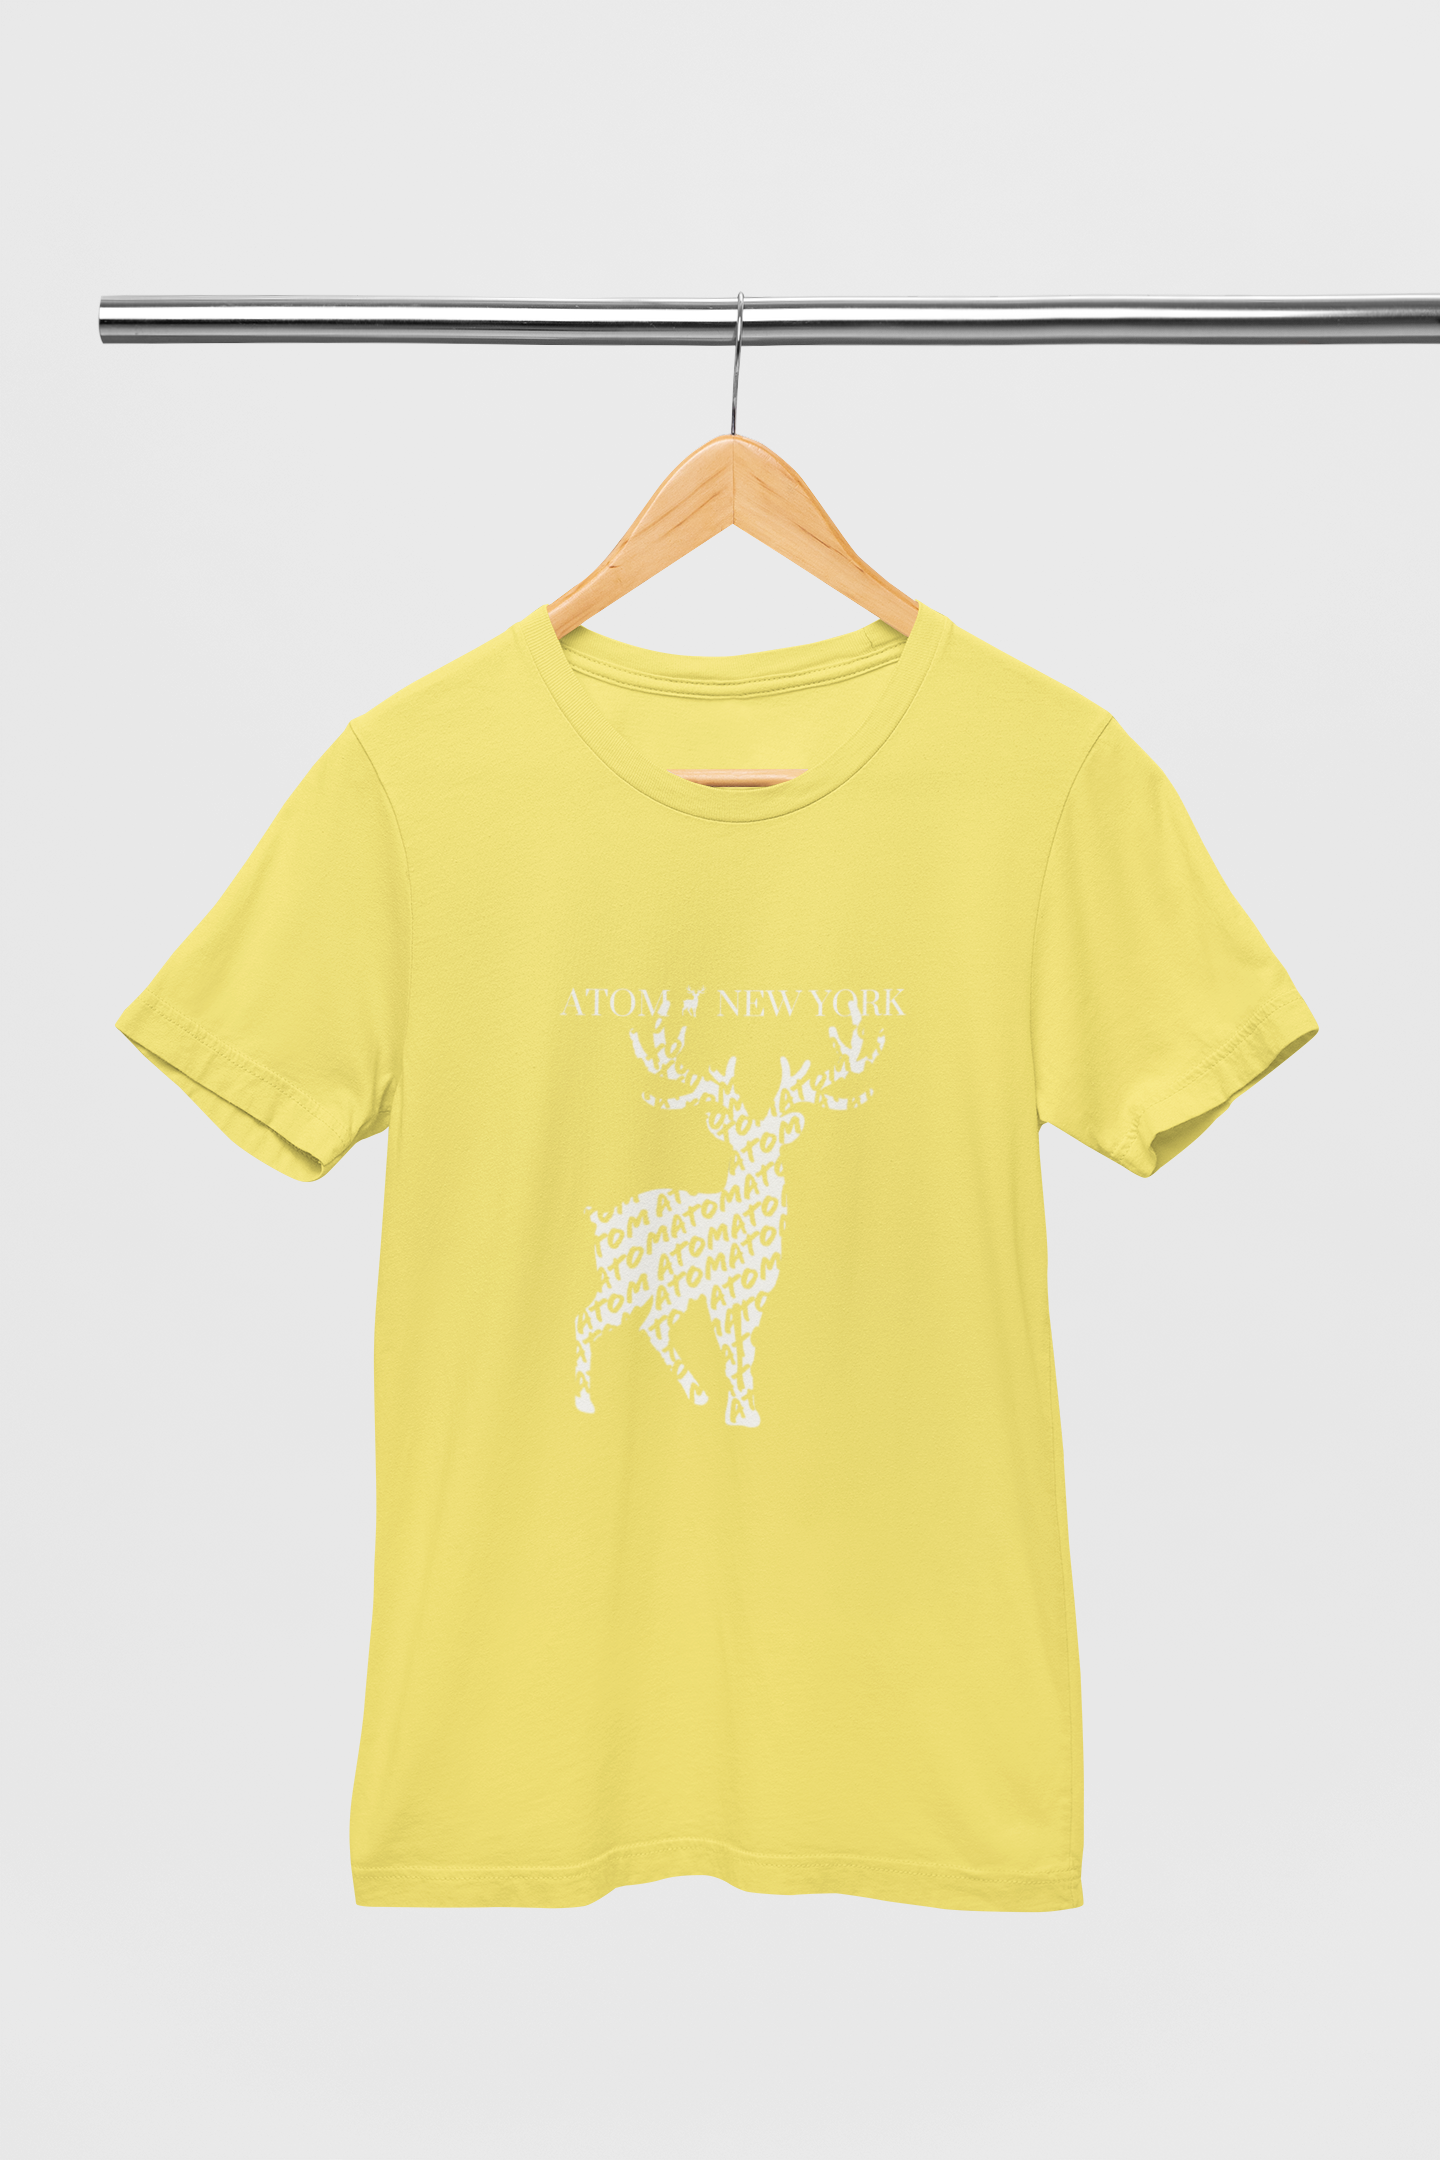 Atom New York Netted Signature Lemon Yellow T-Shirt For Men